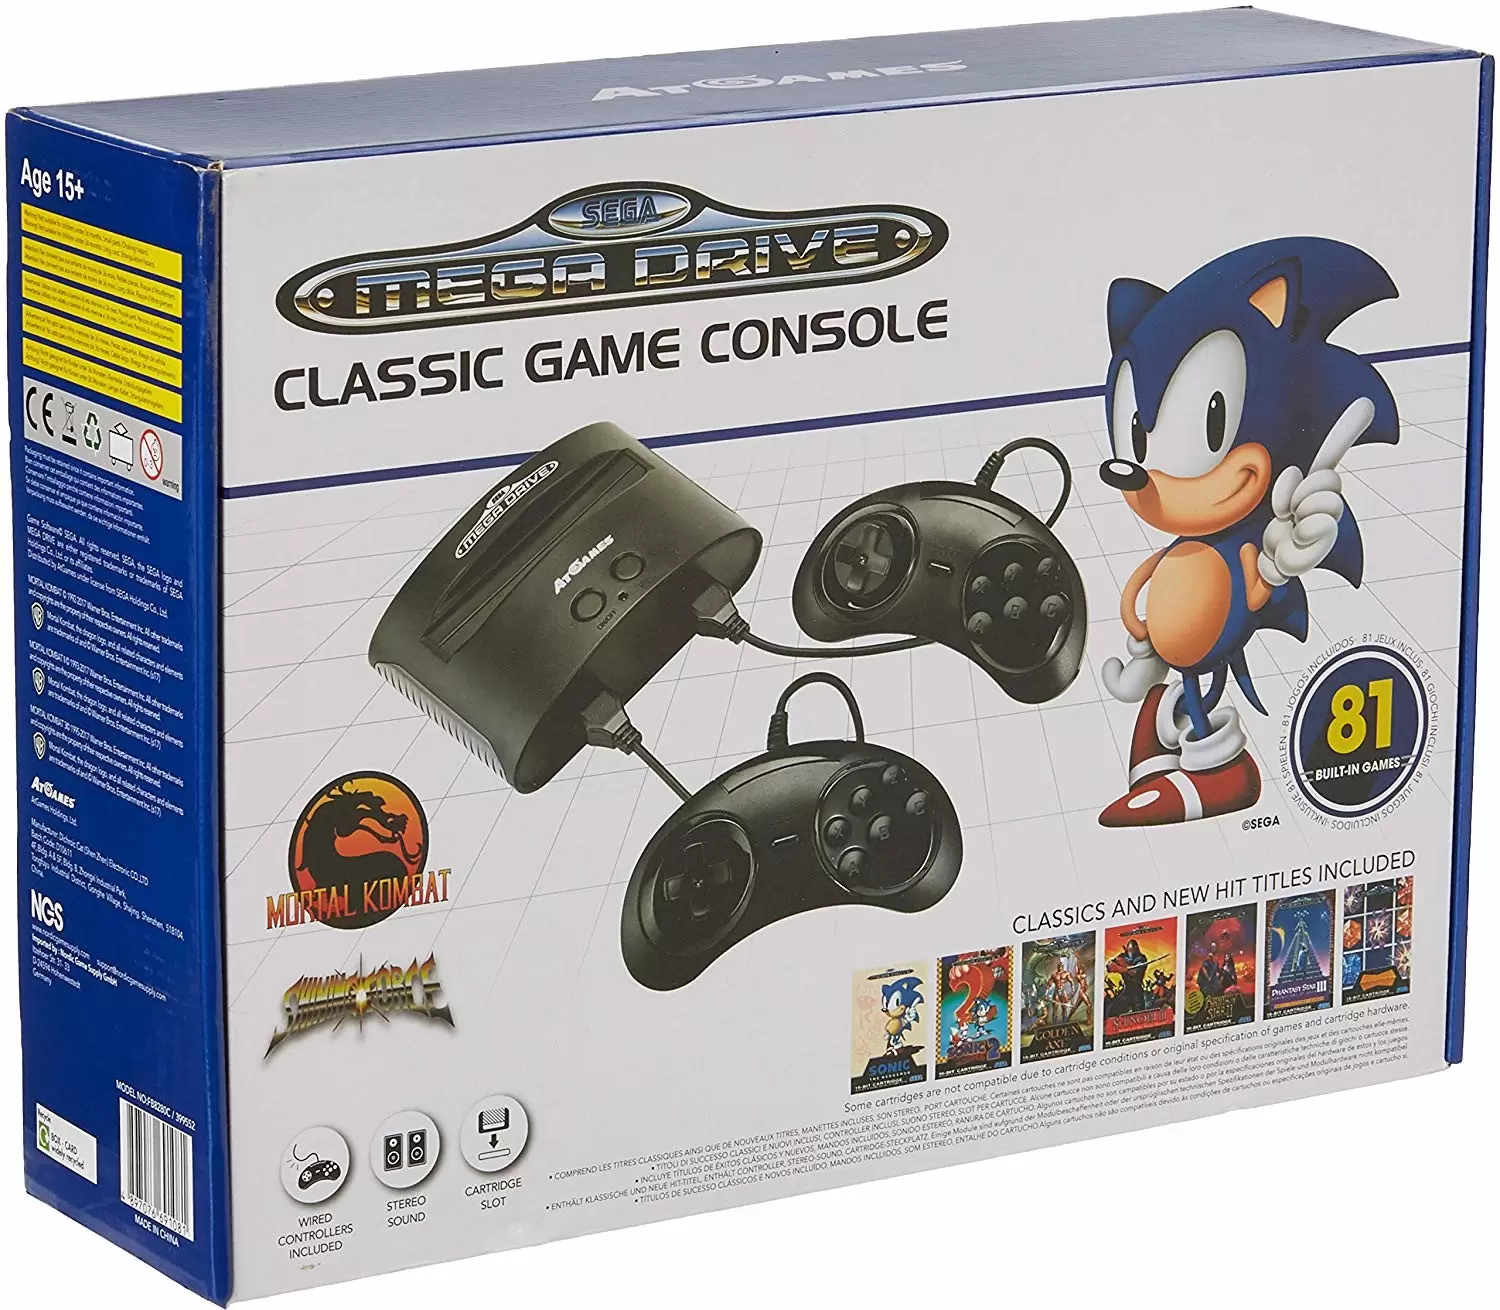 Sega Mega Drive Mini : meilleur prix, test et actualités - Les Numériques